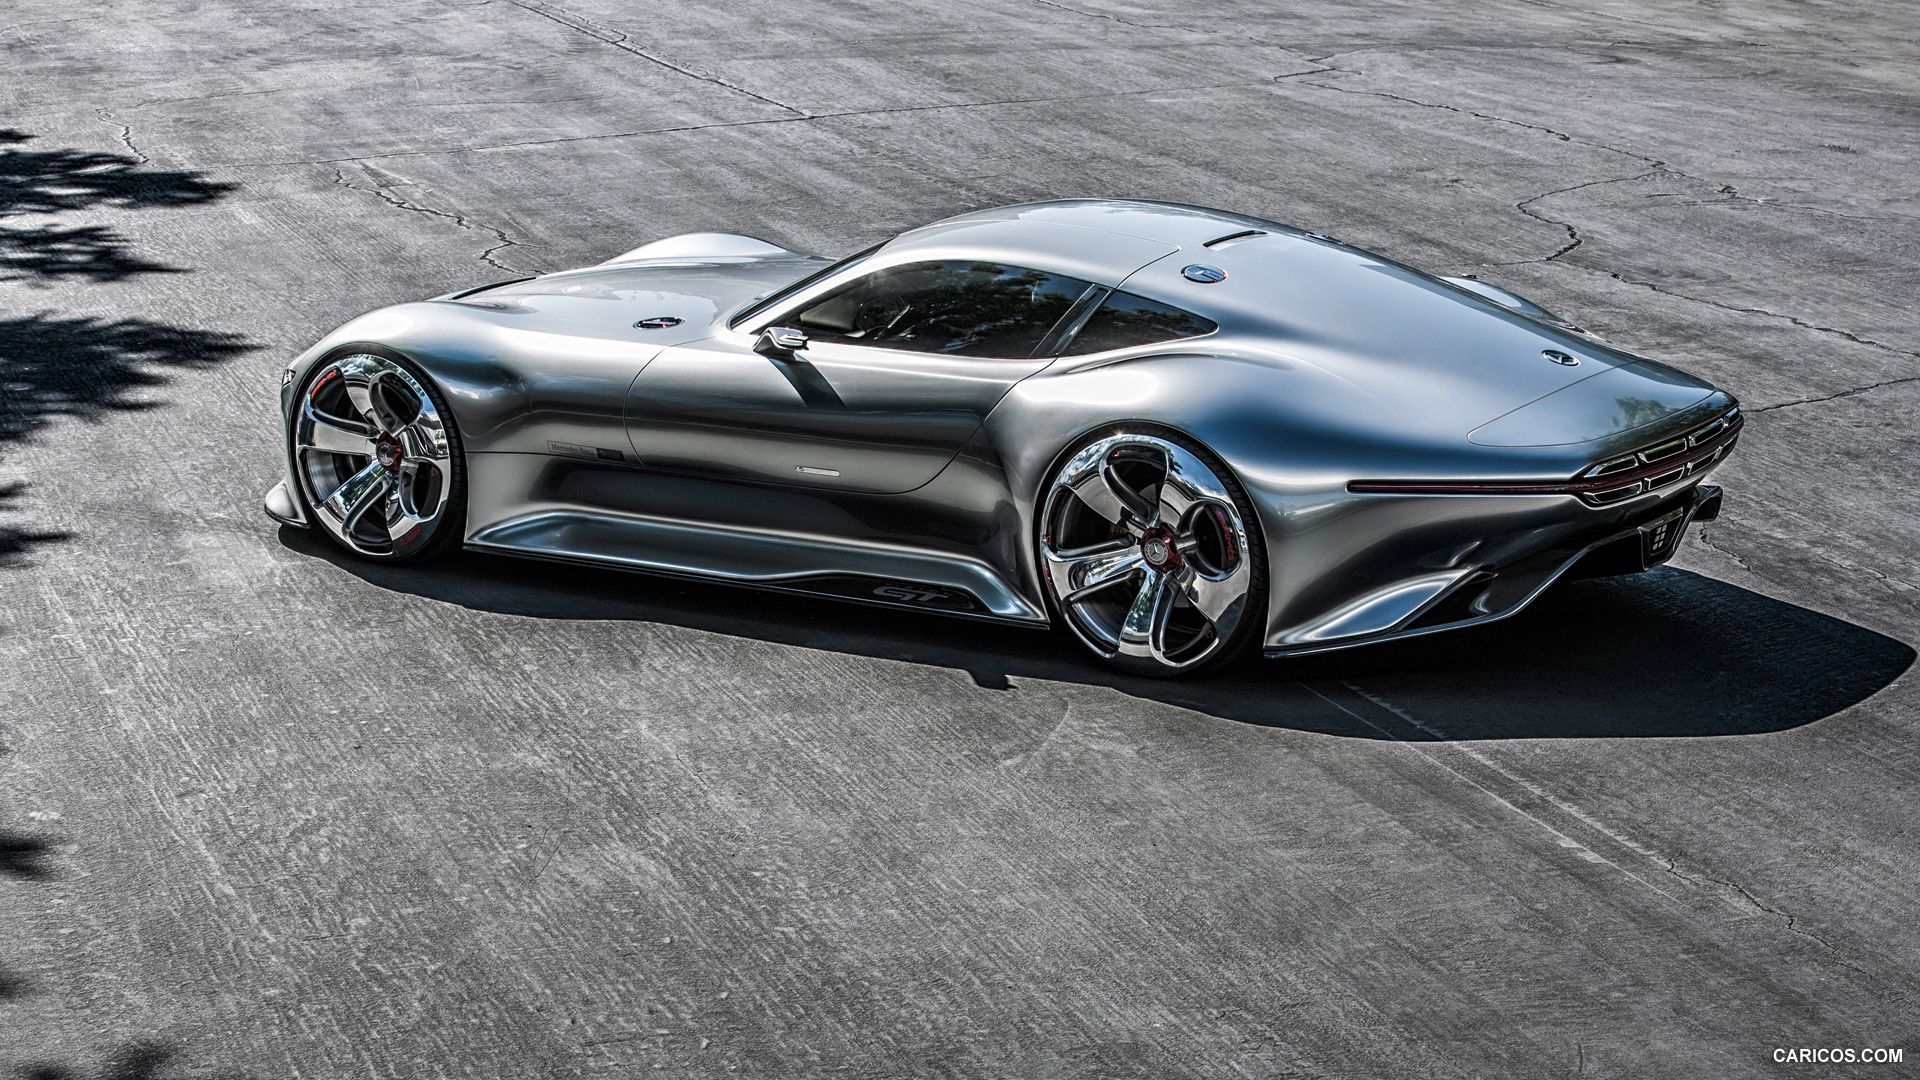 Mercedes Benz AMG Vision Gran Turismo Concept. Mercedes Benz Amg, Super Cars, Concept Cars